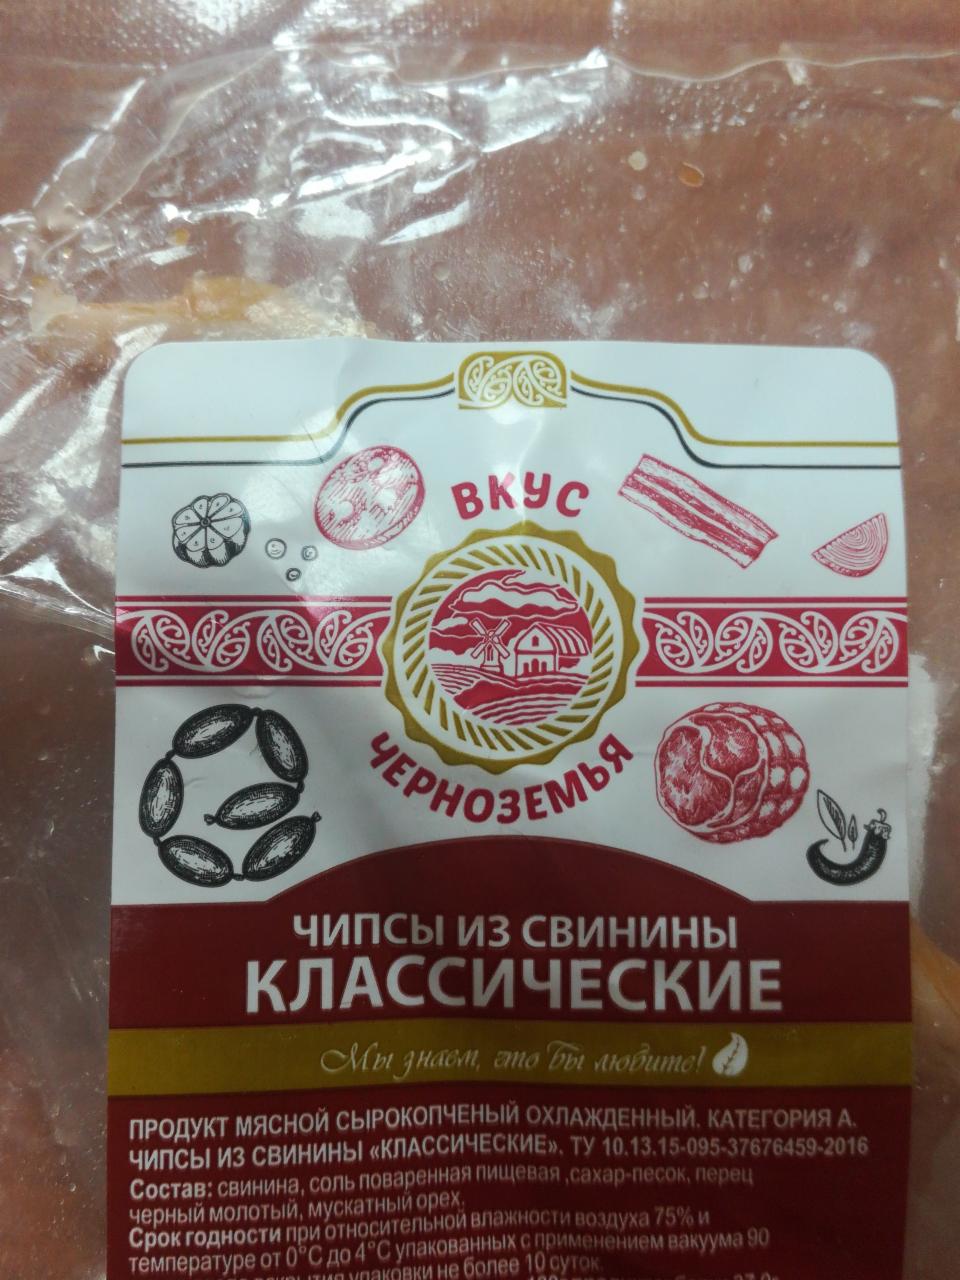 Фото - чипсы из свинины классические Вкус Черноземья